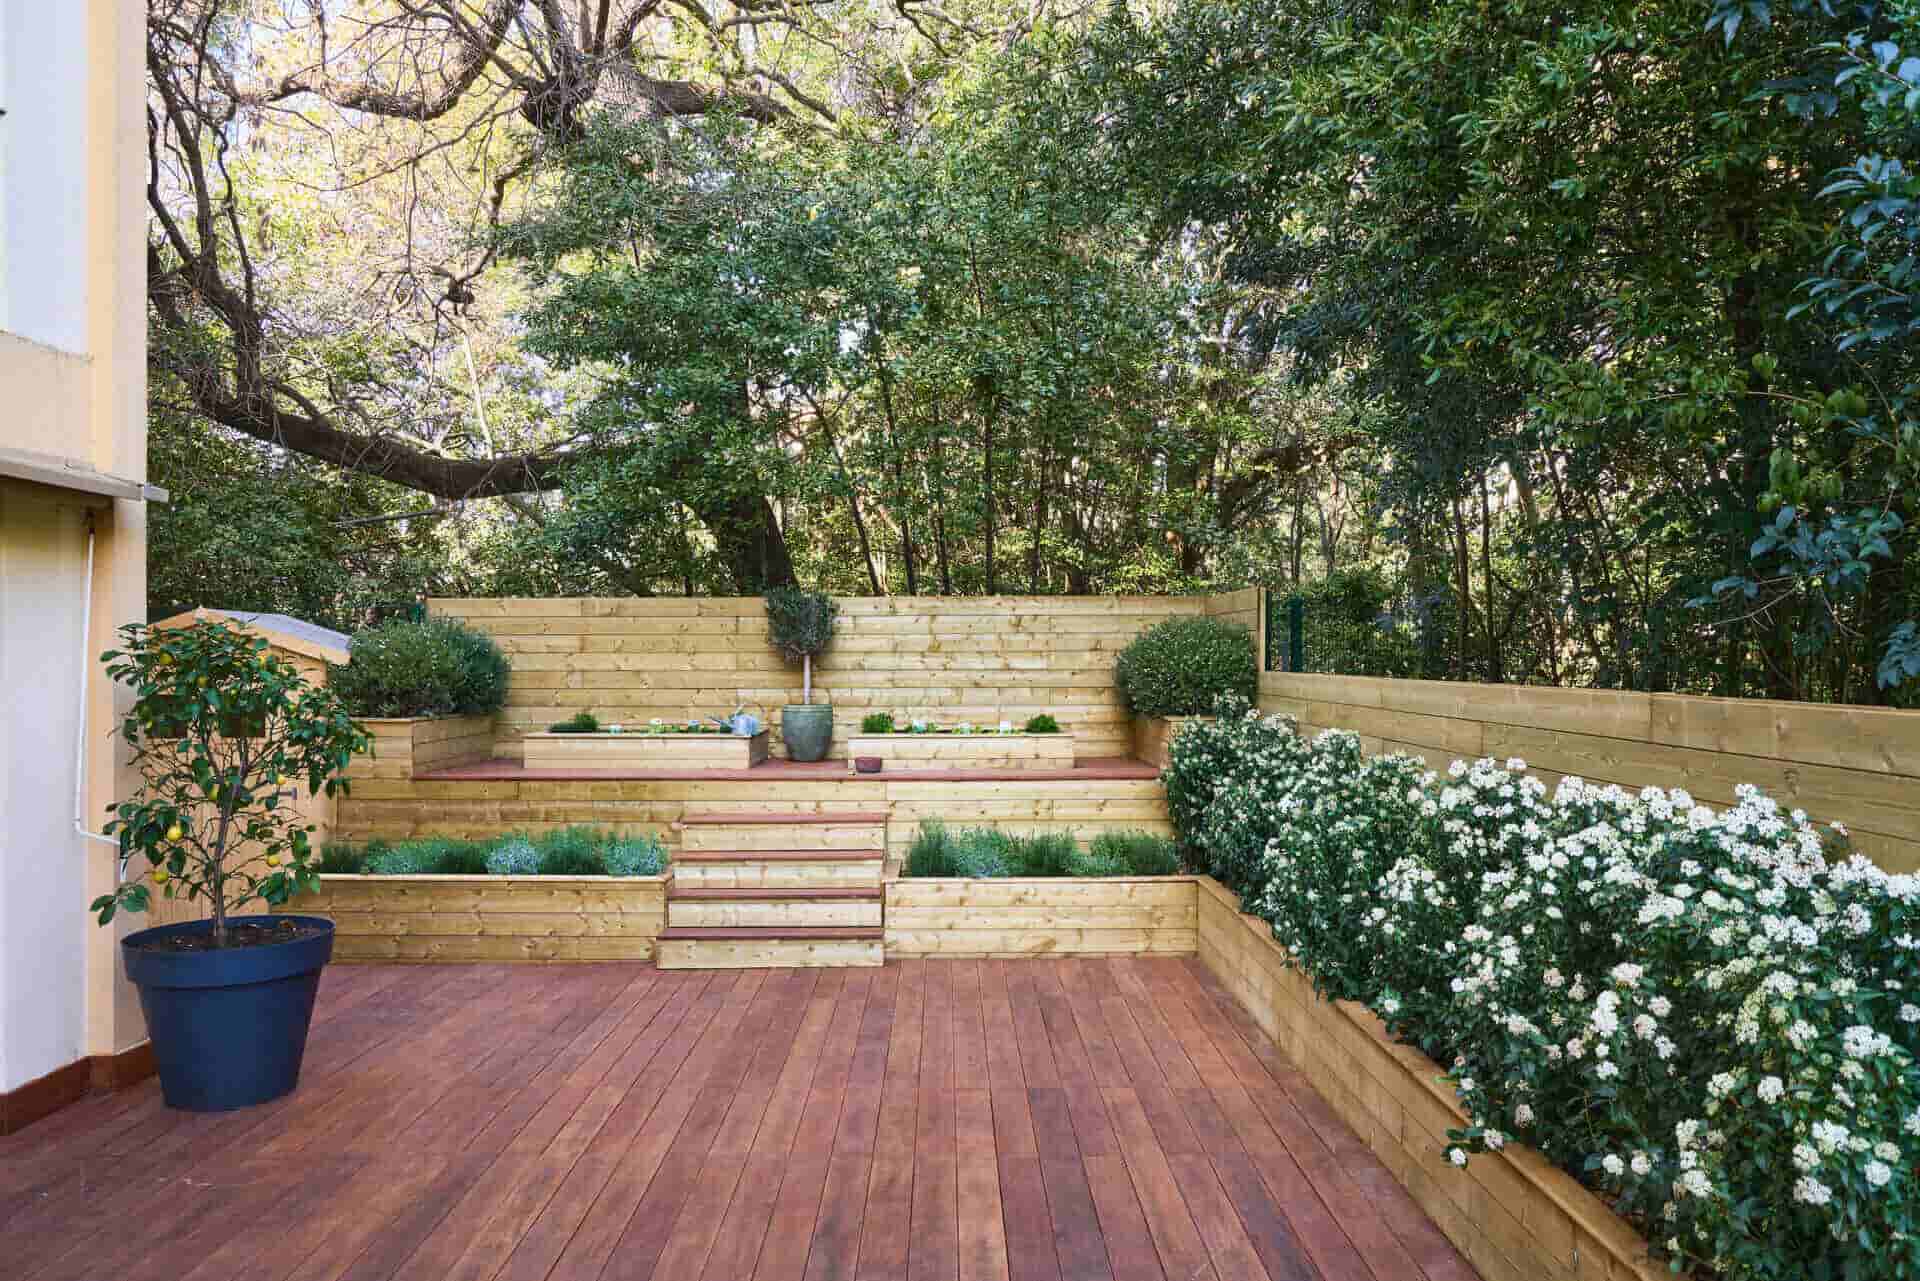 Building A Terrace Garden